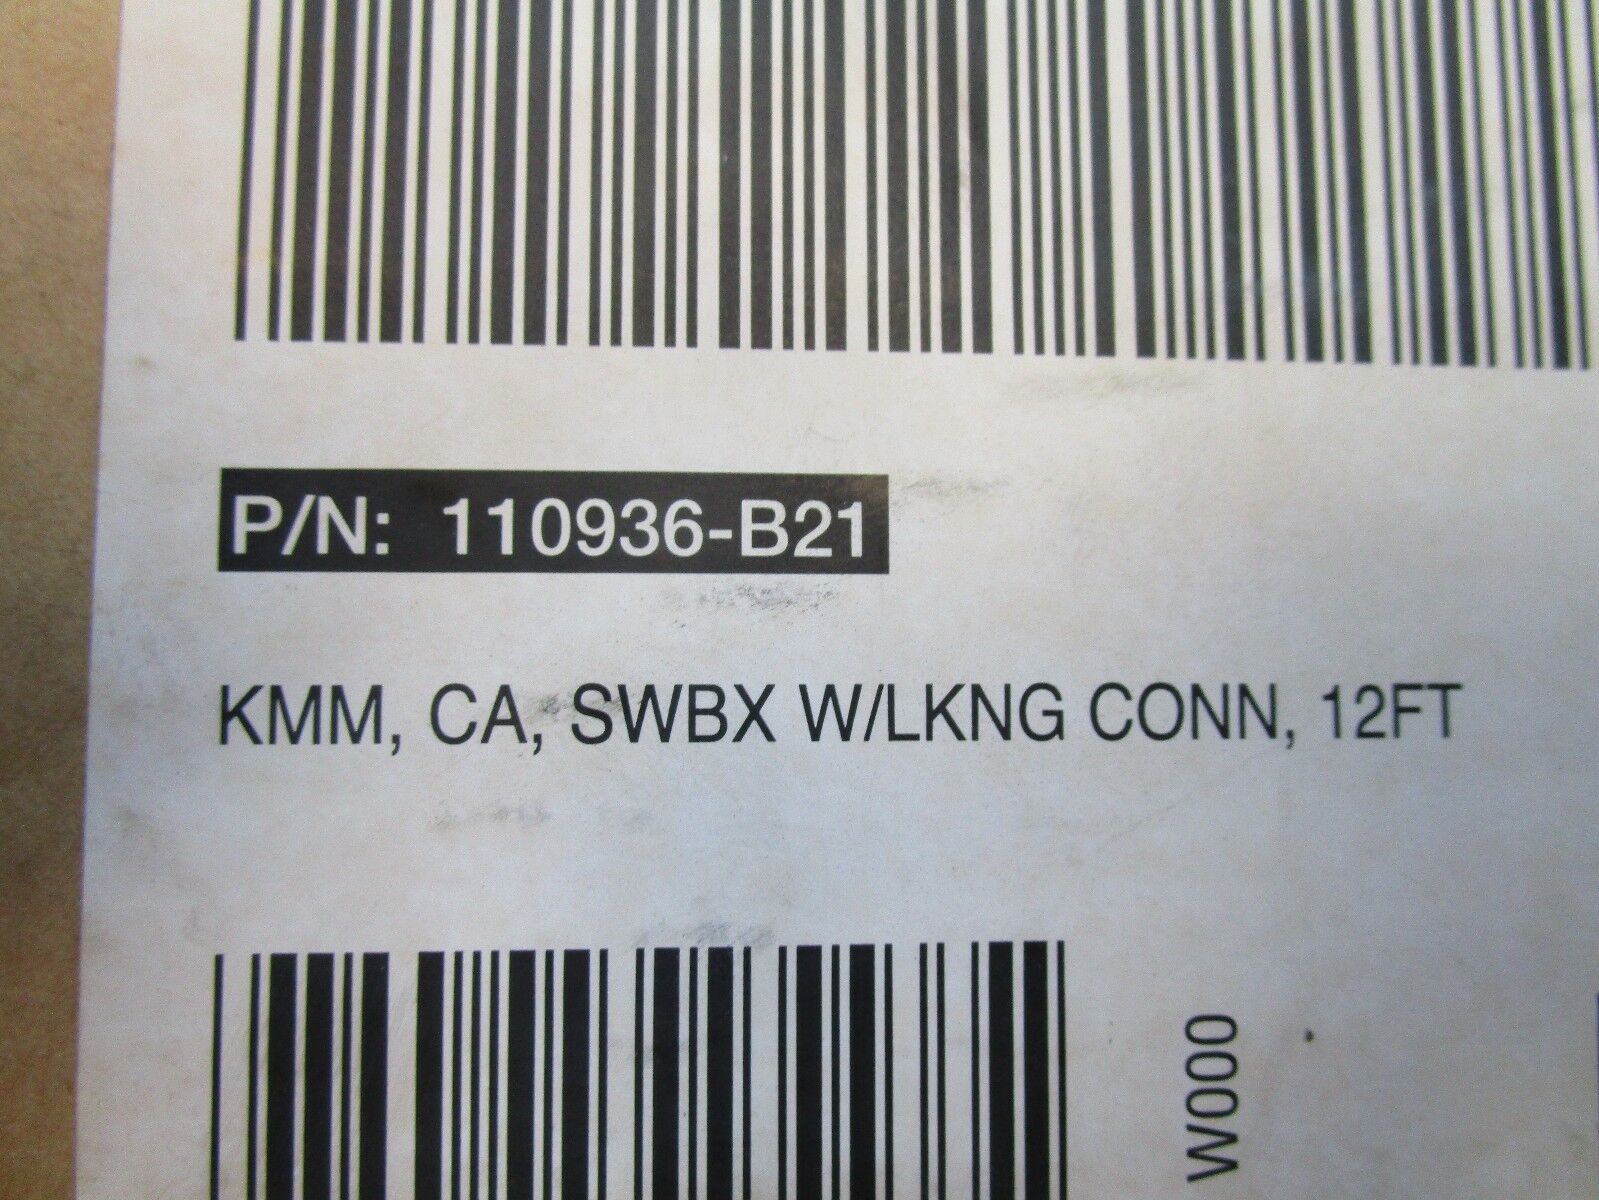  HP 110936-B21 COMPAQ KMM, CA SWBX W/LKNG CONN 12FT.